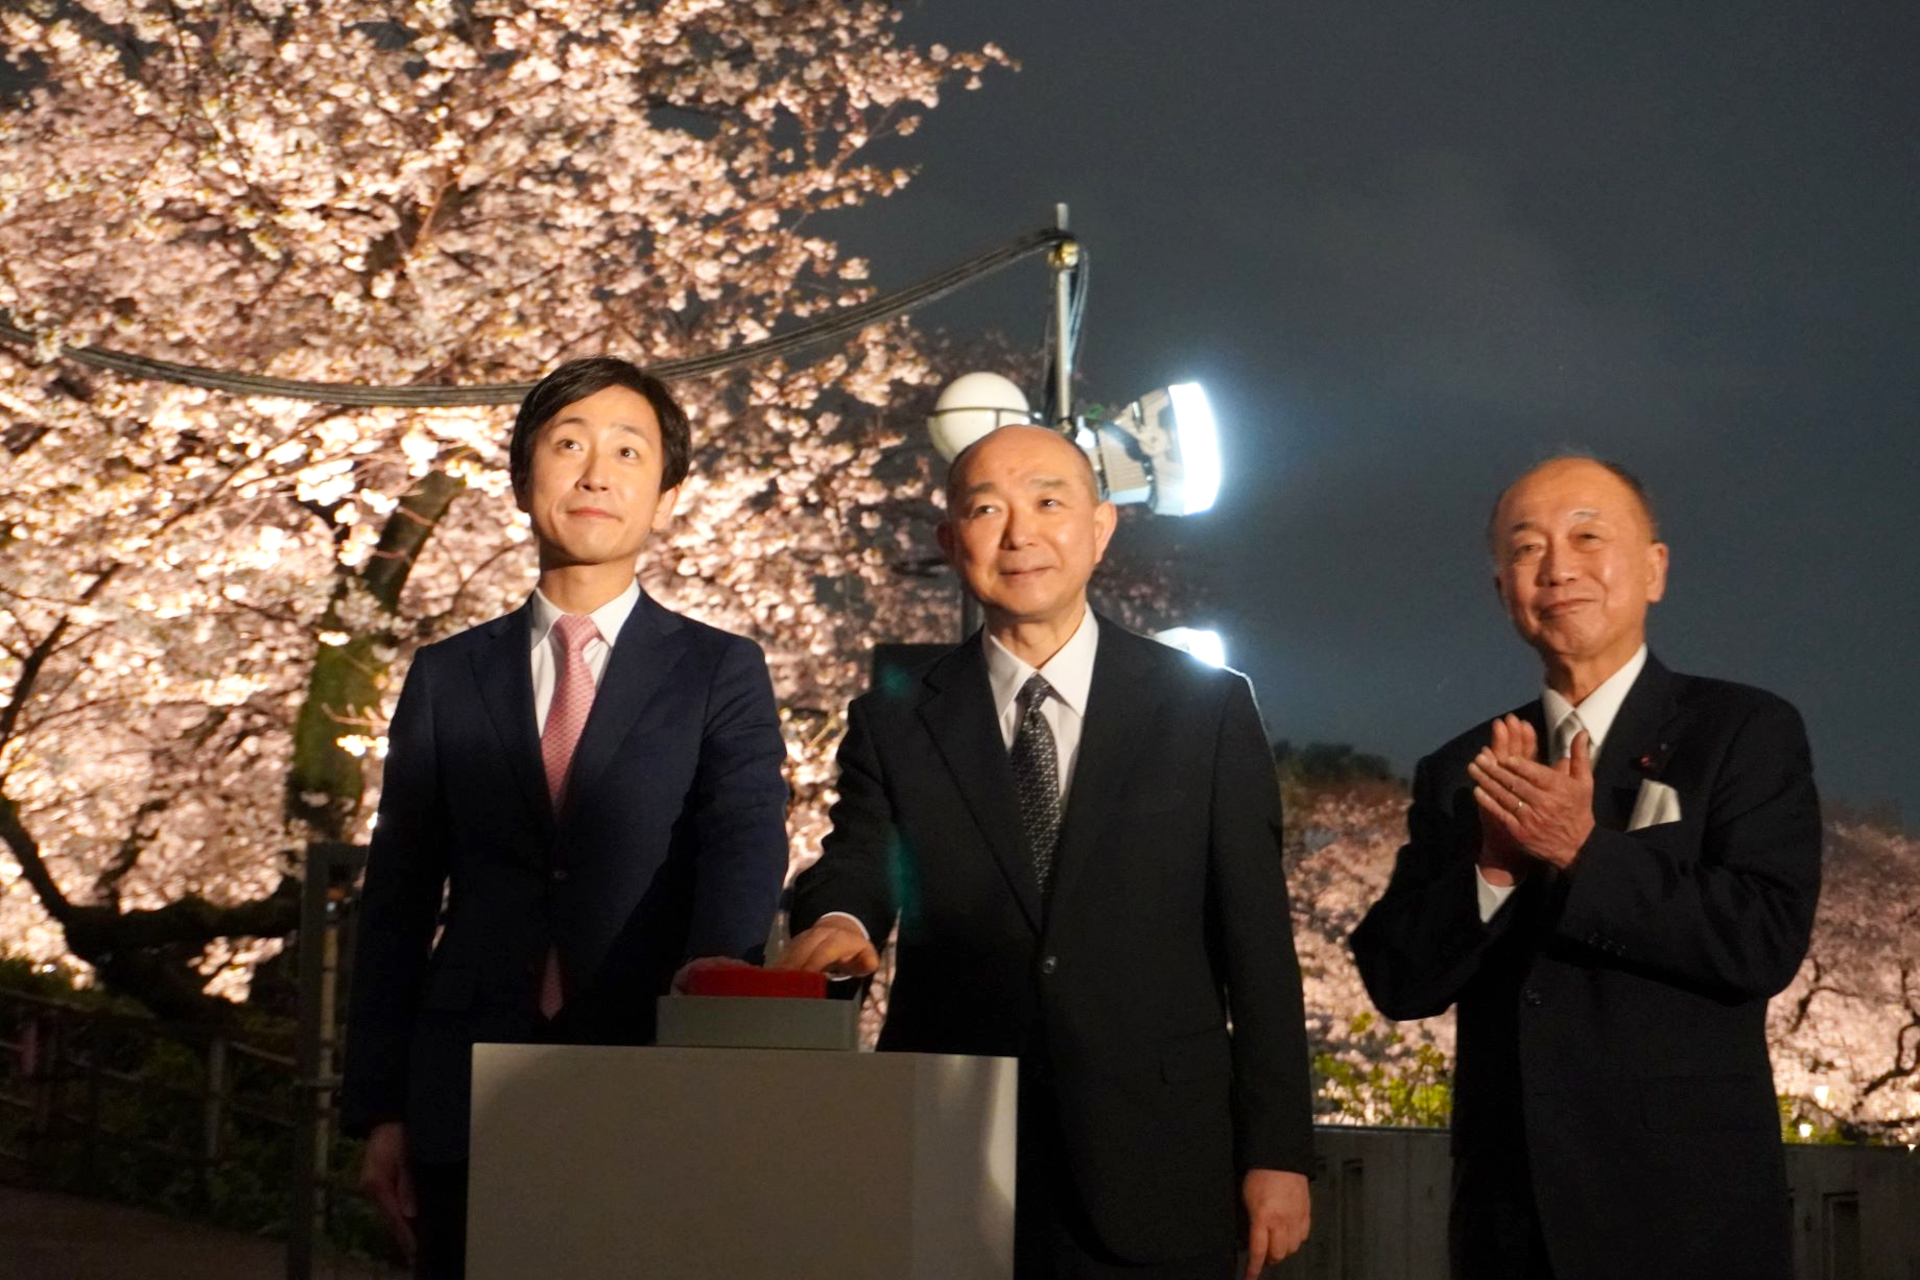 東京・千鳥ヶ淵の夜桜が幻想的にライトアップ。雨のなか、千代田区長ら